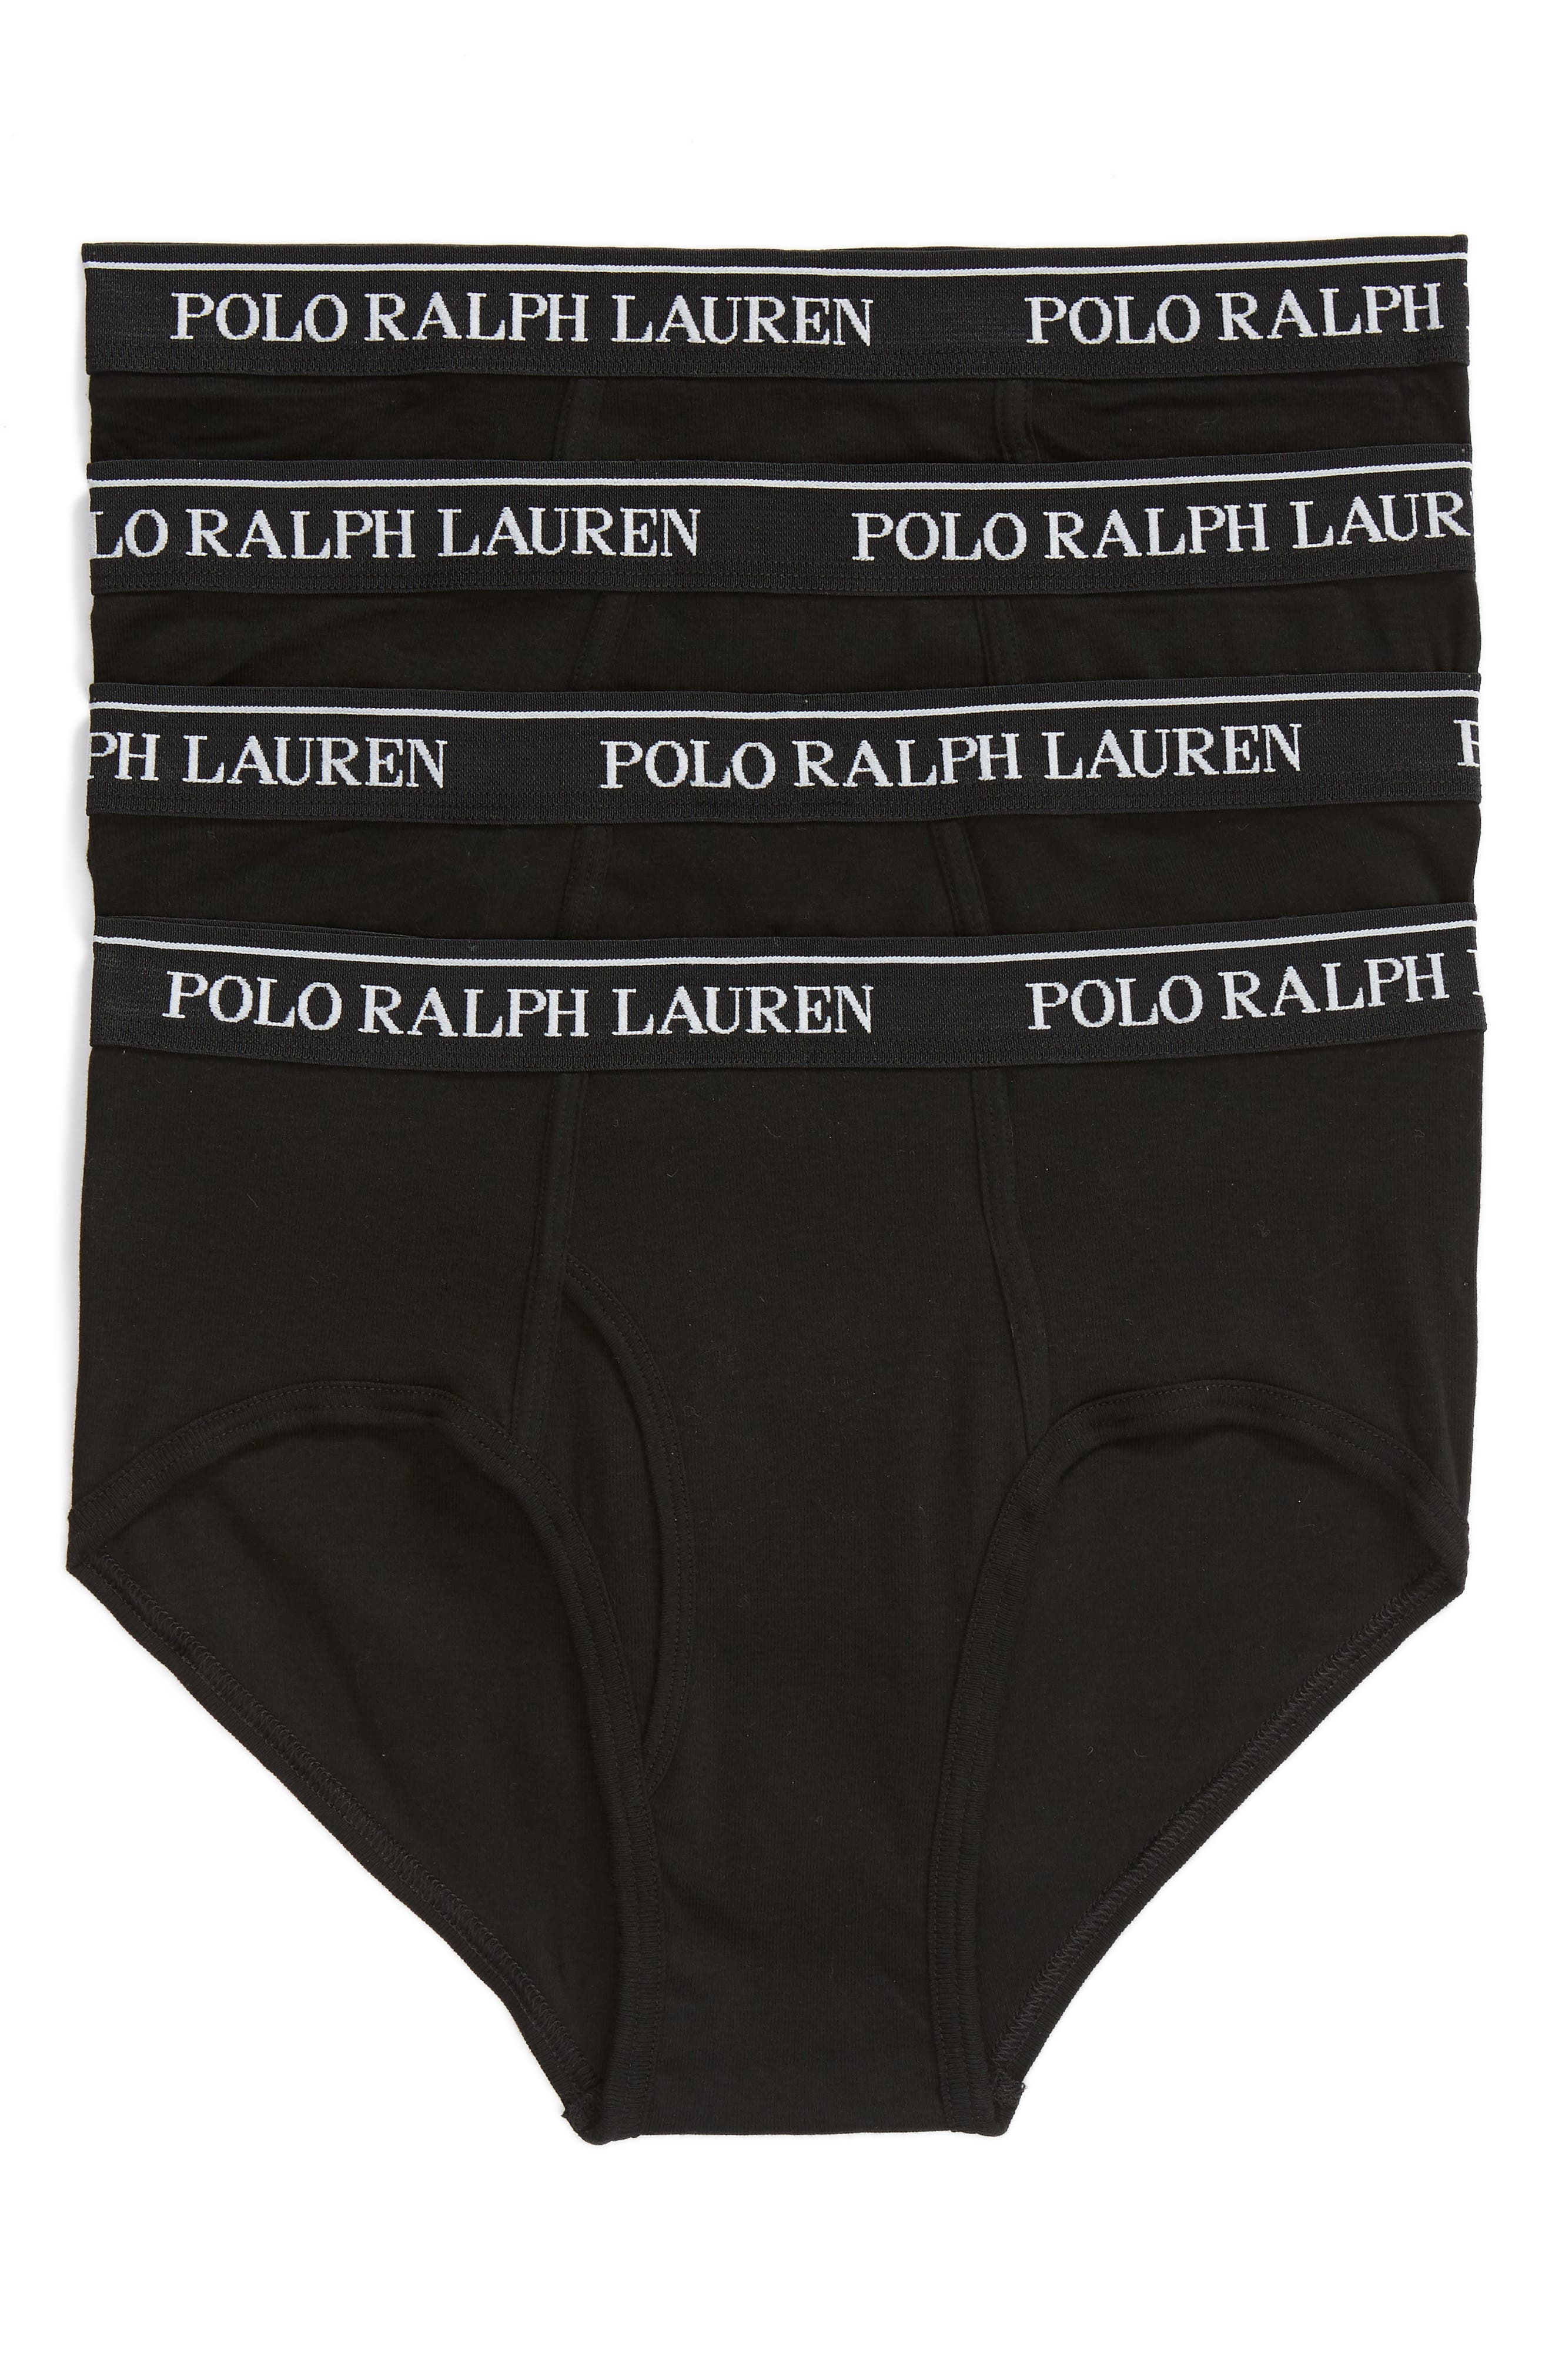 polo ralph lauren underwear price